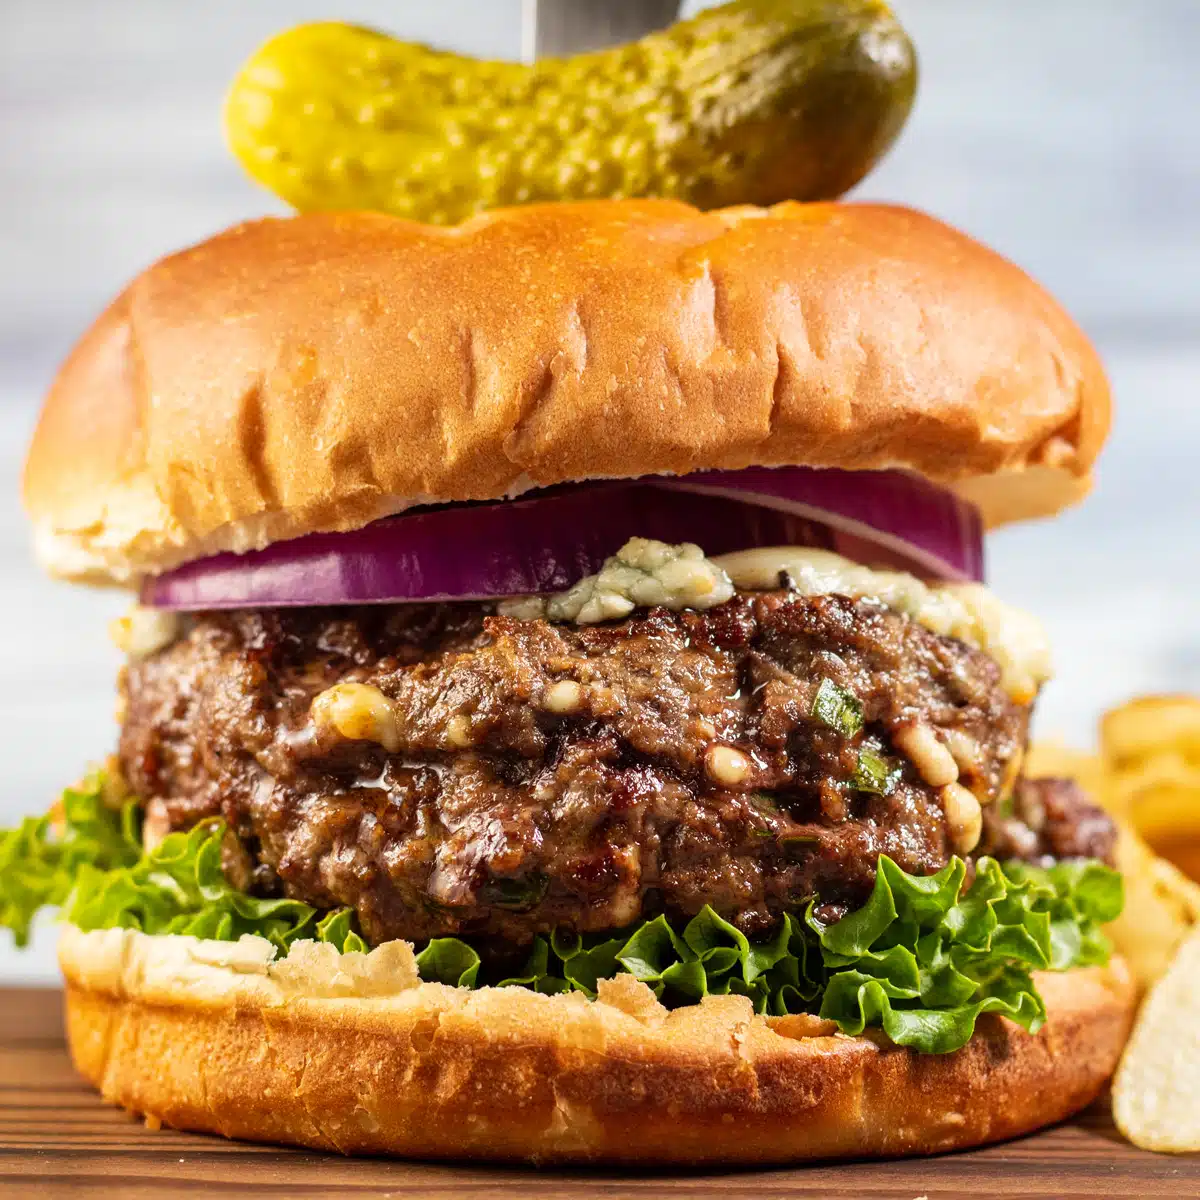 Квадратное изображение бургера с голубым сыром на разделочной доске.